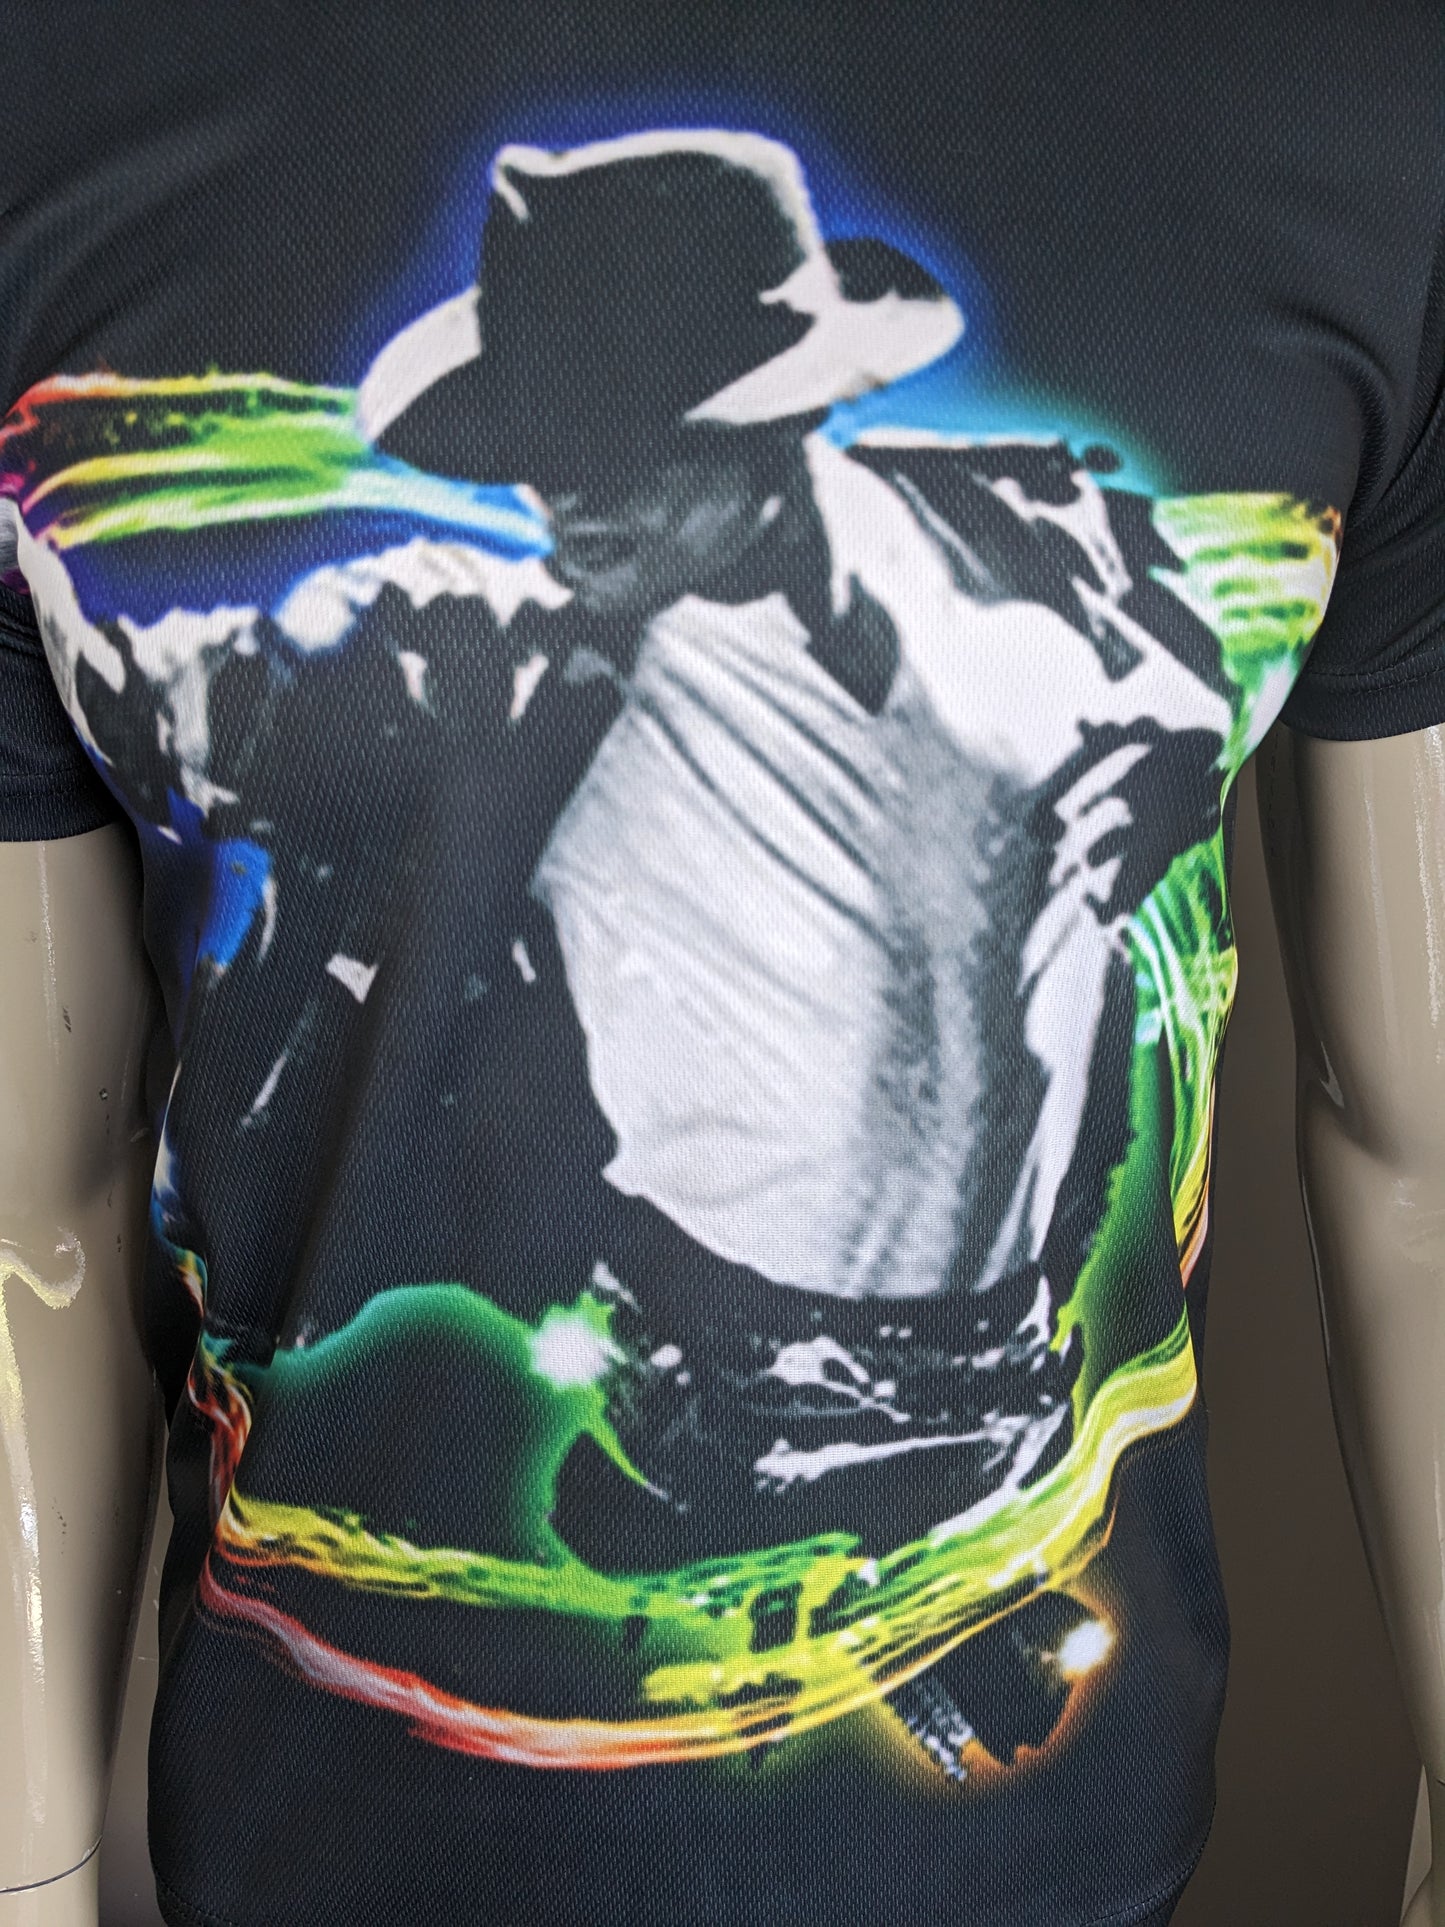 Micheal Jackson Print Shirt. Schwarz mit farbigem Druck. Größe S. Stretch.